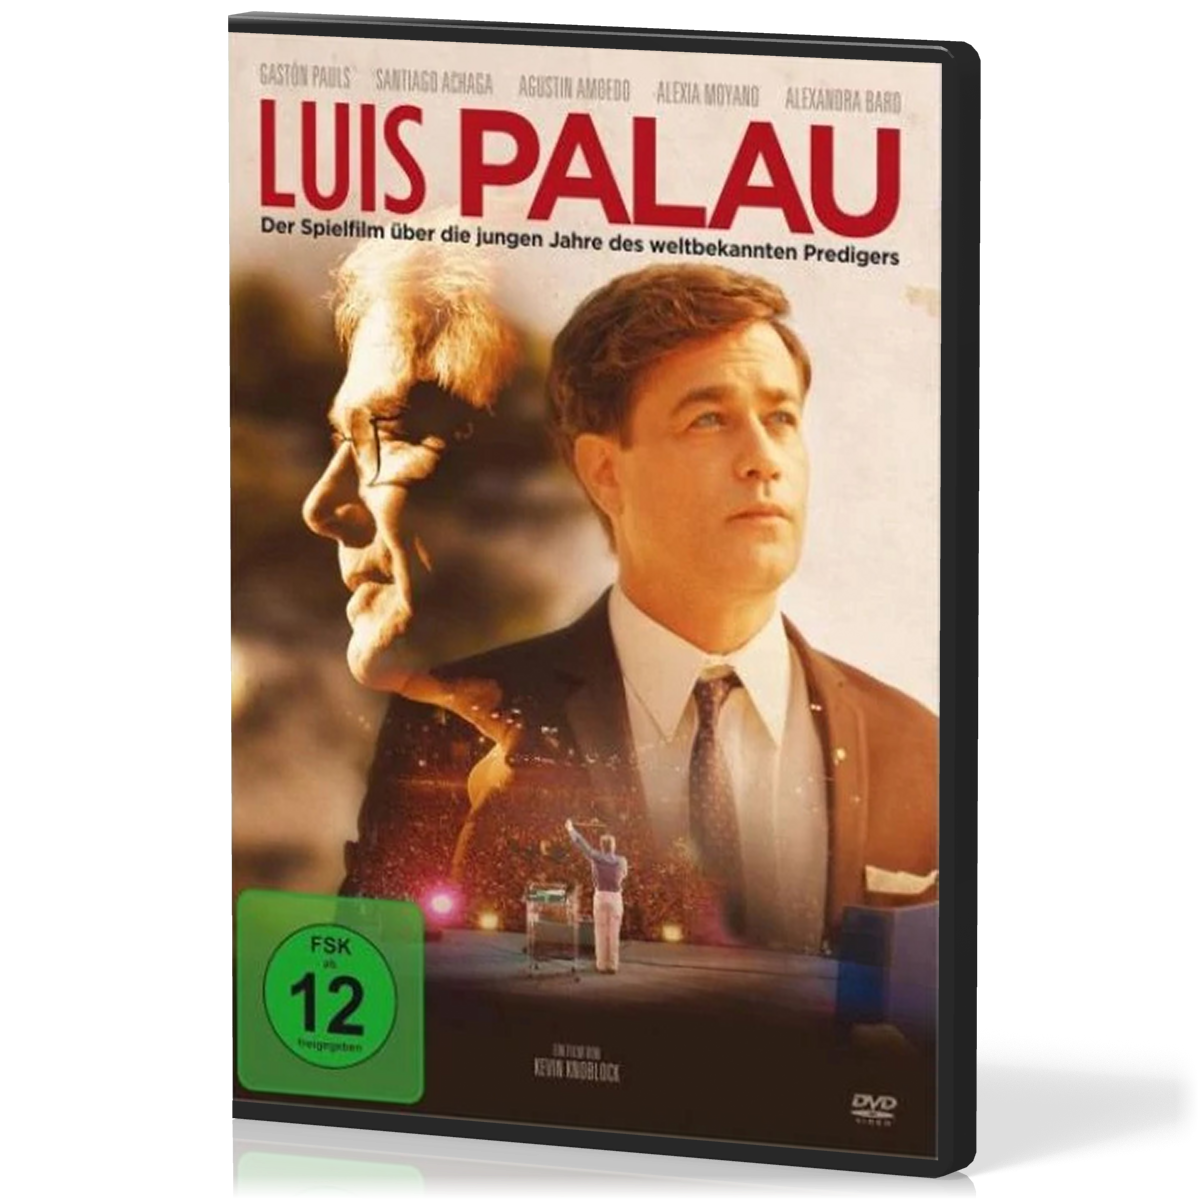 Luis Palau (DVD) - Der Spielfilm über die jungen Jahre des weltbekannten Predigers